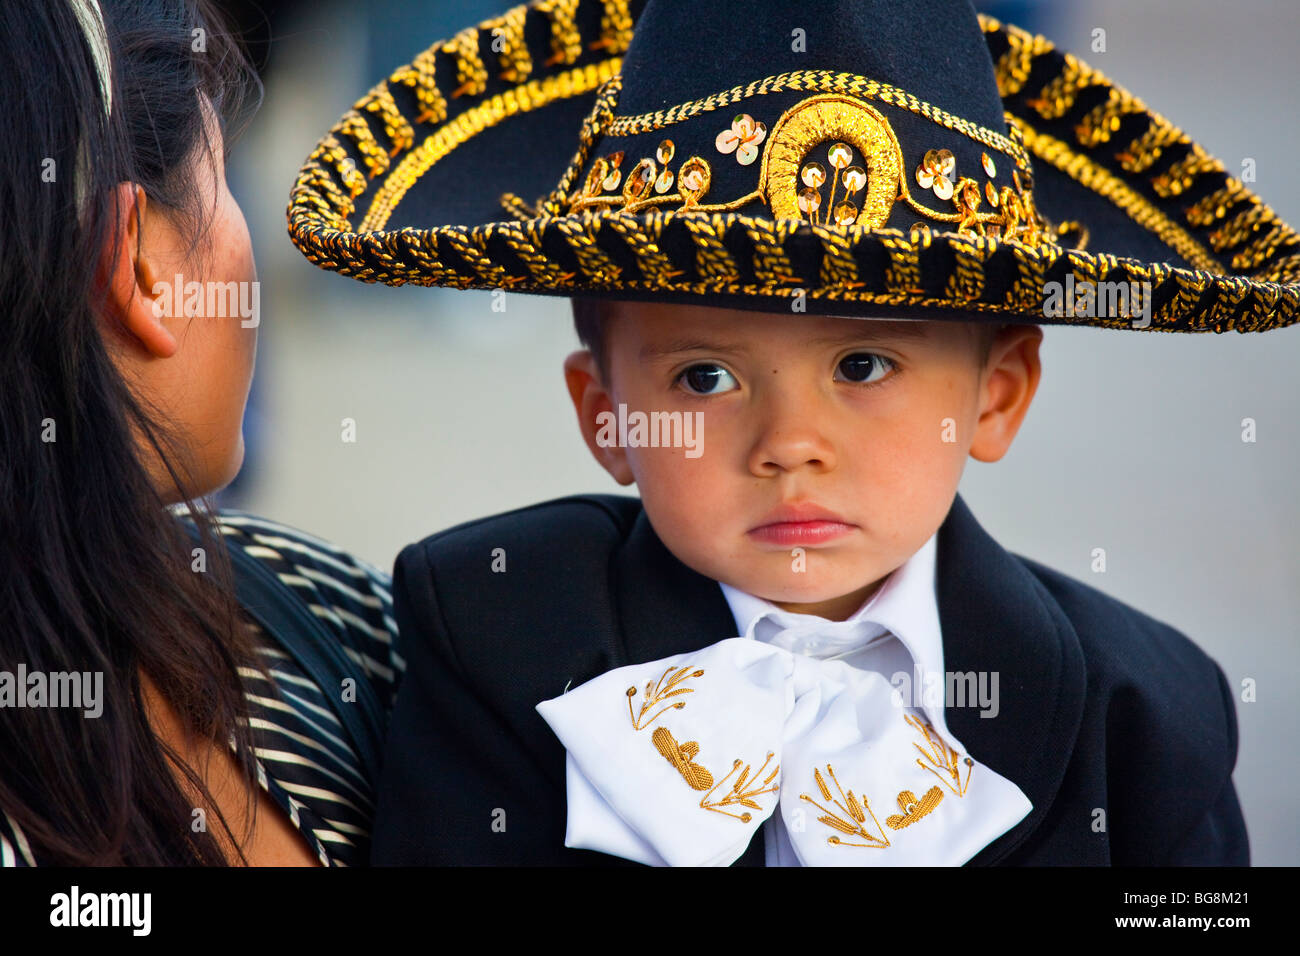 Boy dressed in a Mariachi costume at the Festival of Saint Cecilia in Plaza Garibaldi Mexico City Stock Photo